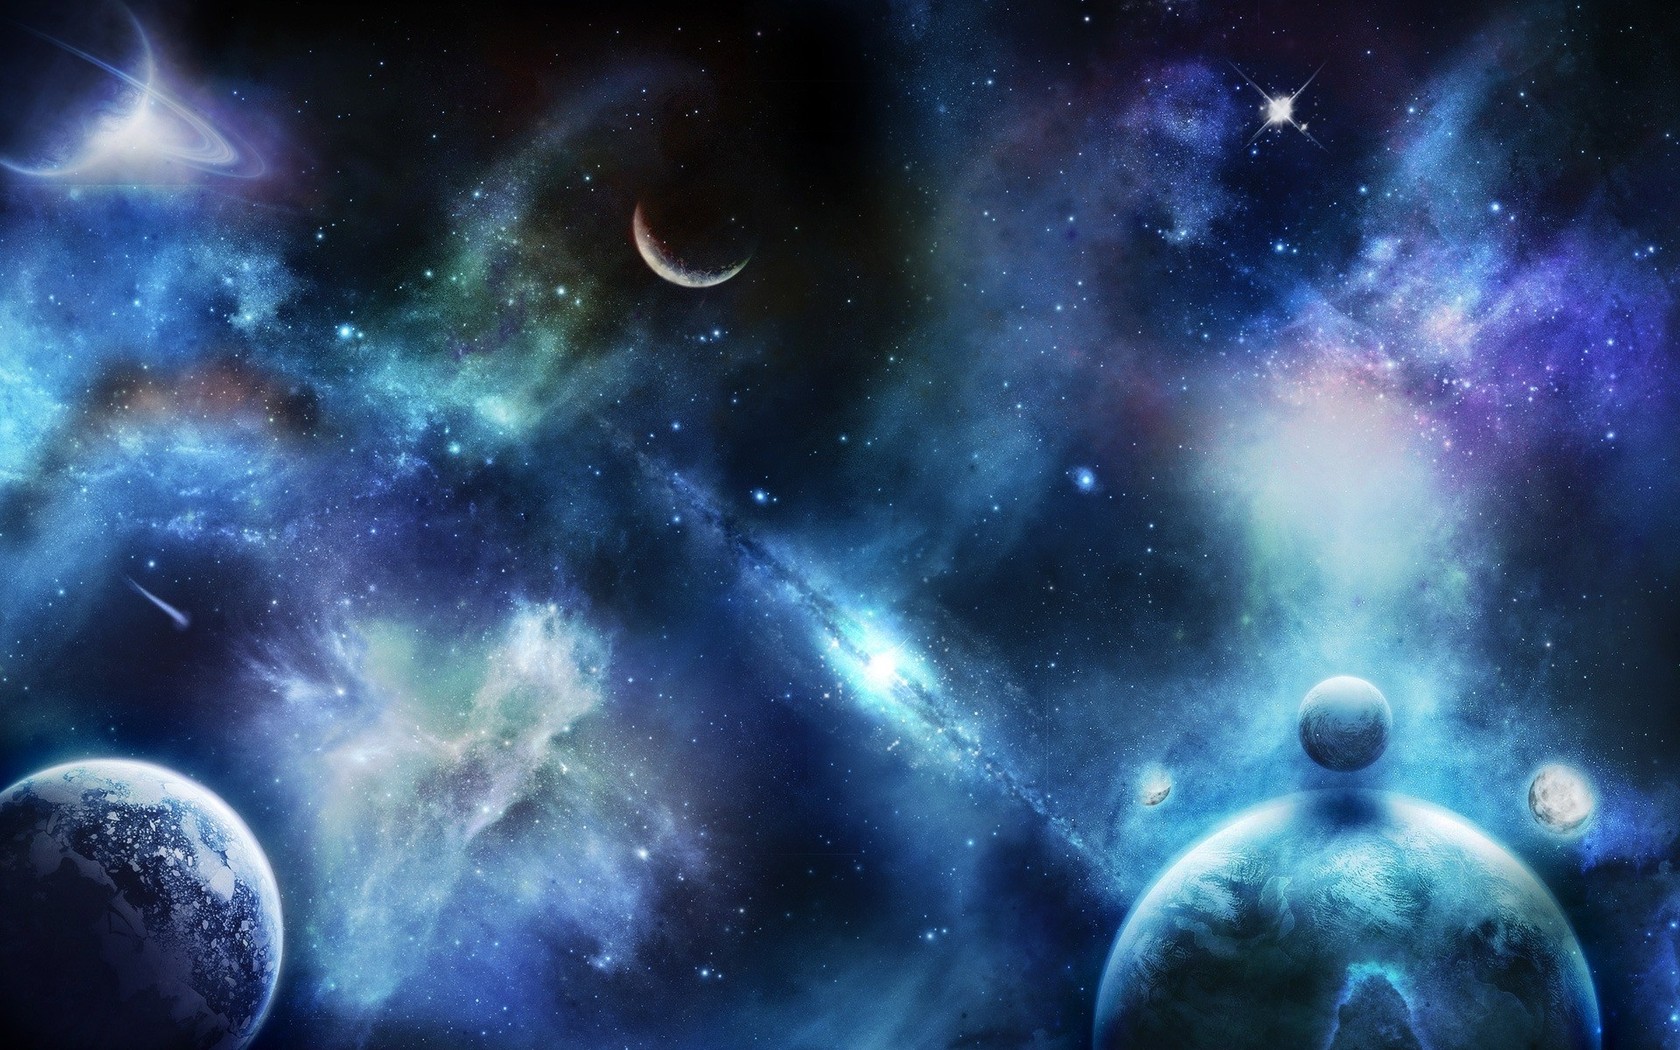 universum wallpaper,weltraum,universum,astronomisches objekt,himmel,blau